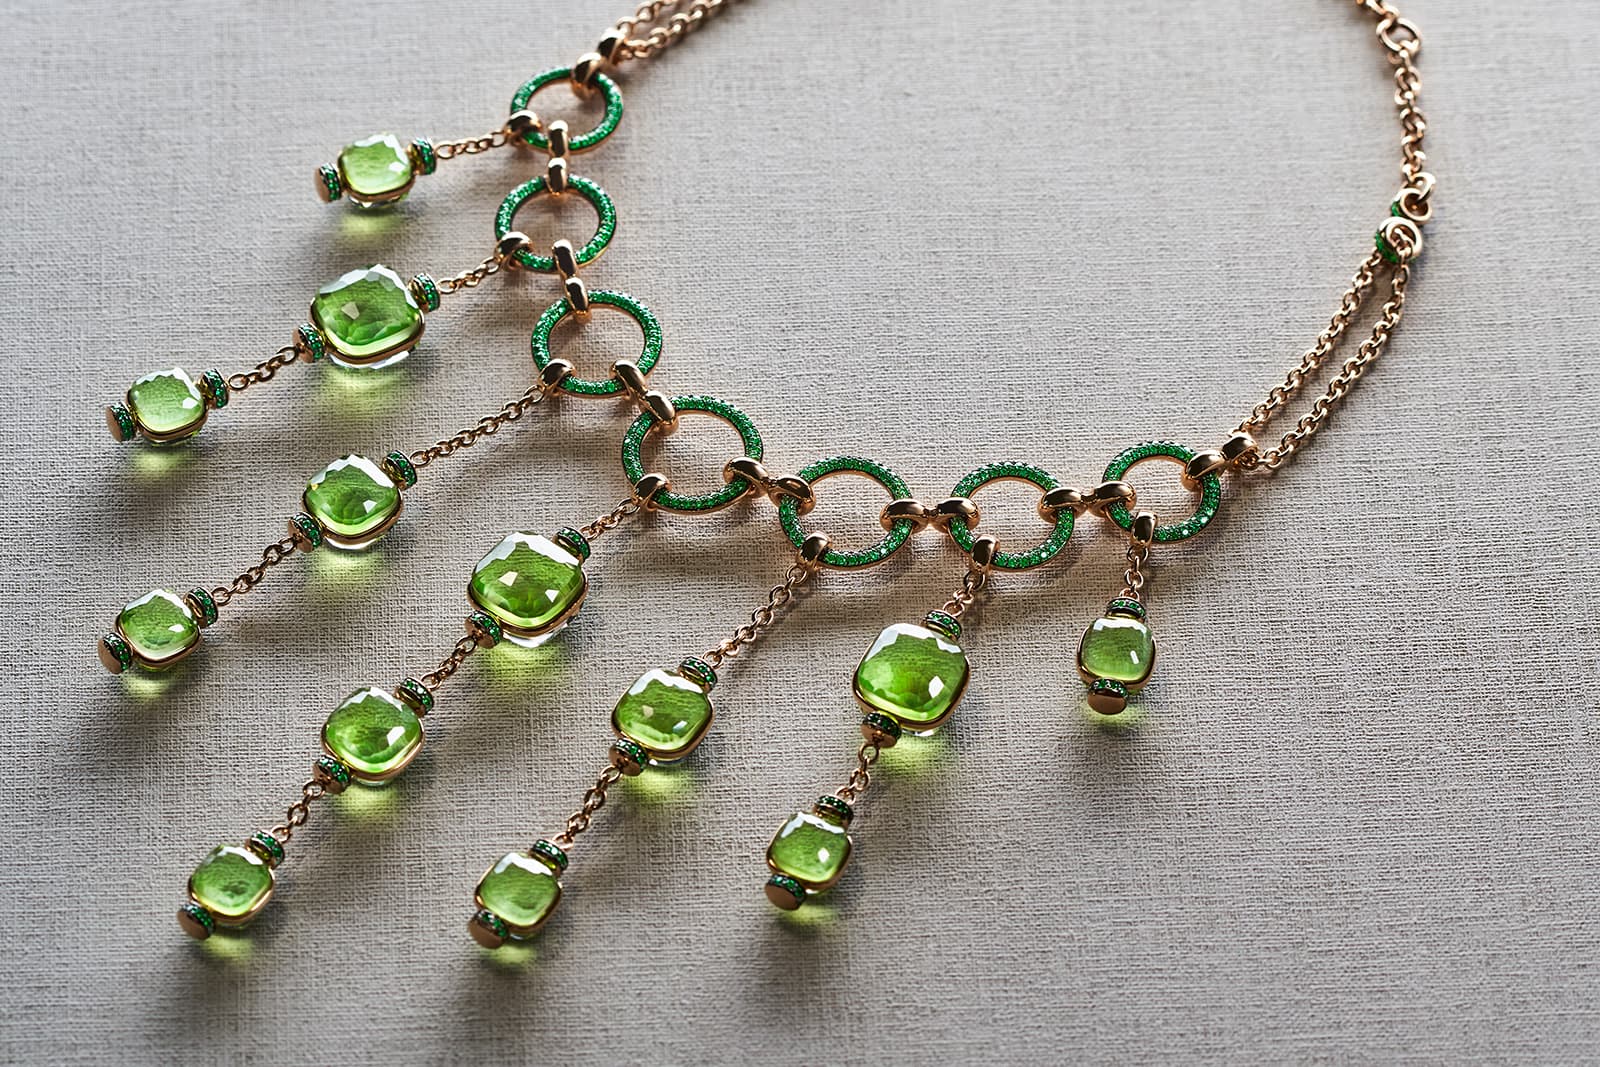 Pomellato Nudo Collier Cascade necklace with peridot and tsavorite garnets